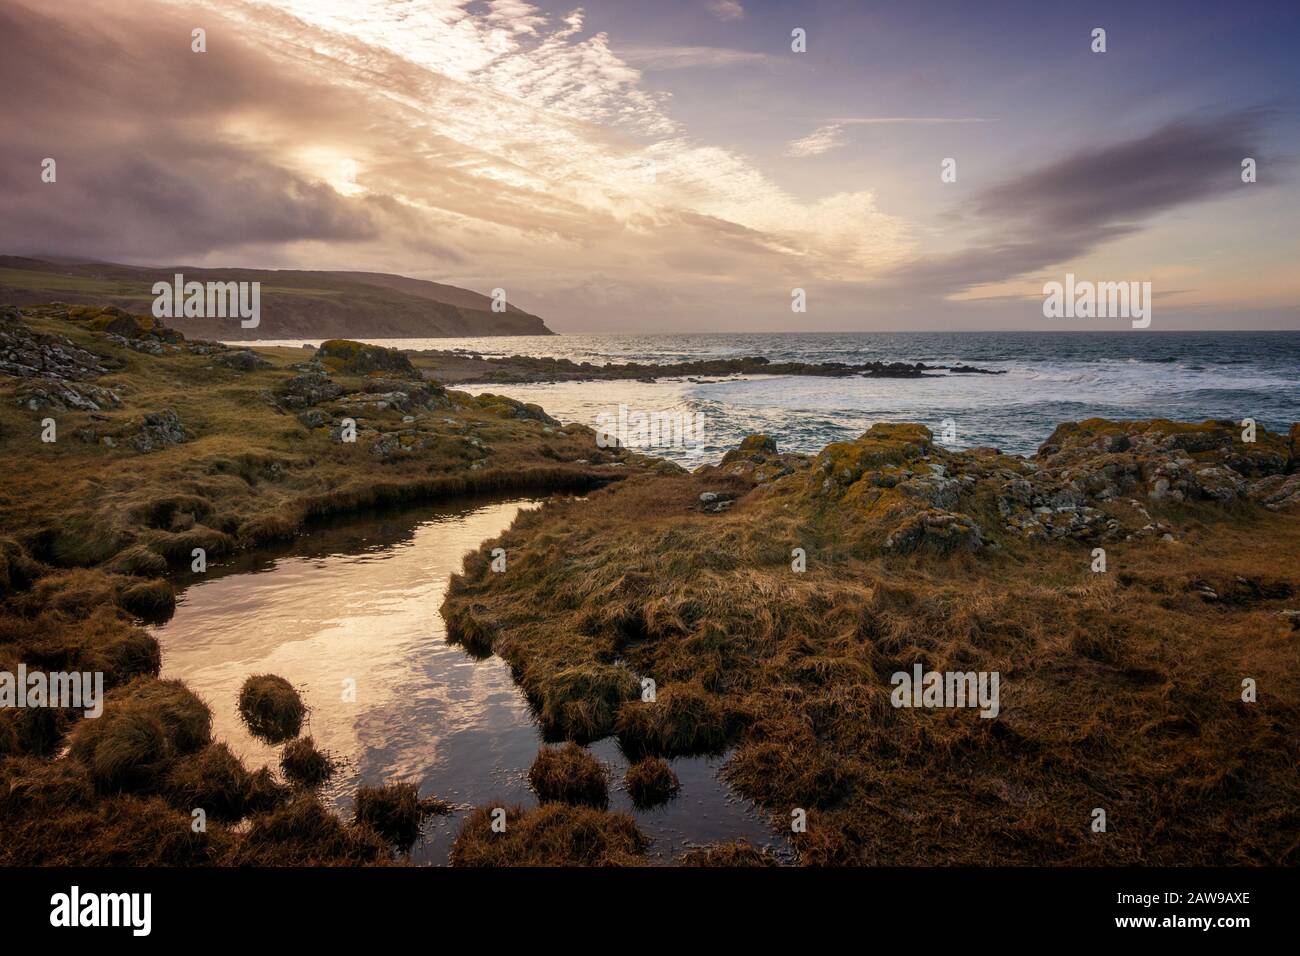 UK Landscapes: Stunning sunset on the coast at Machrihanish, Argyll, Scotland Stock Photo